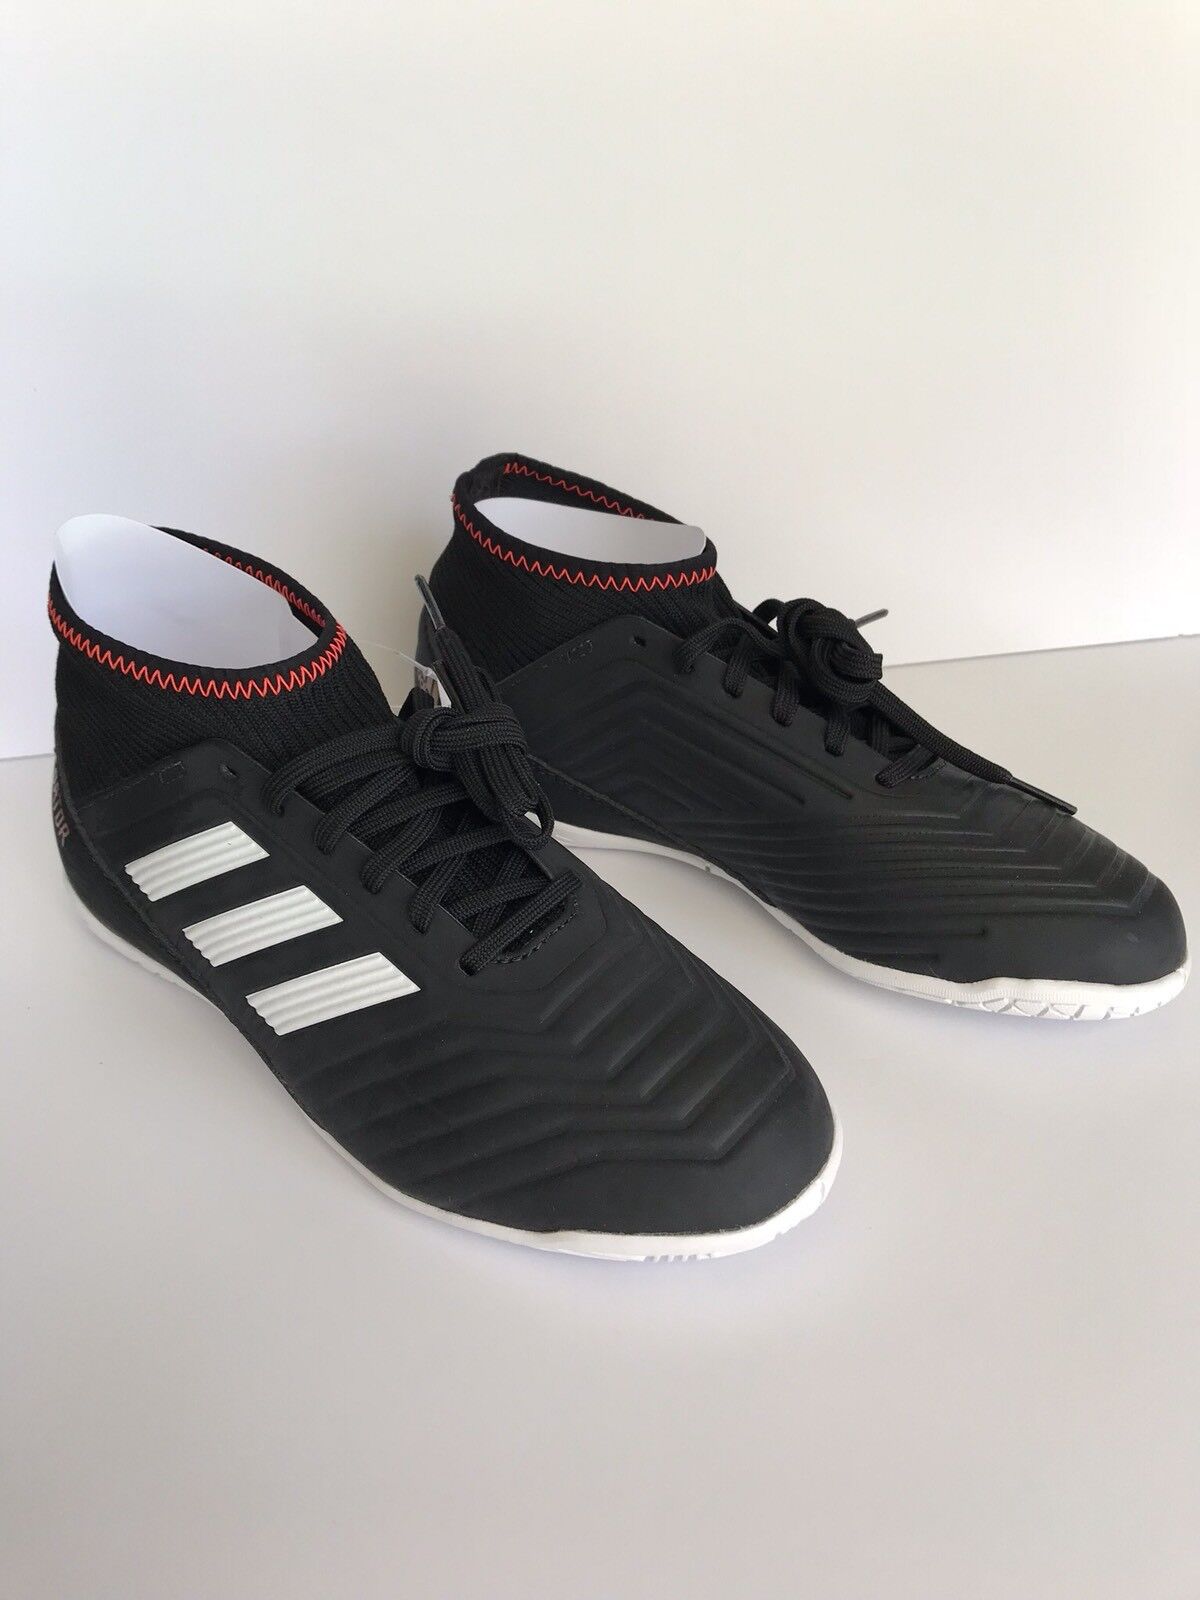 adidas Originals Predator Tango 18.3 Soccer Size 4 | eBay